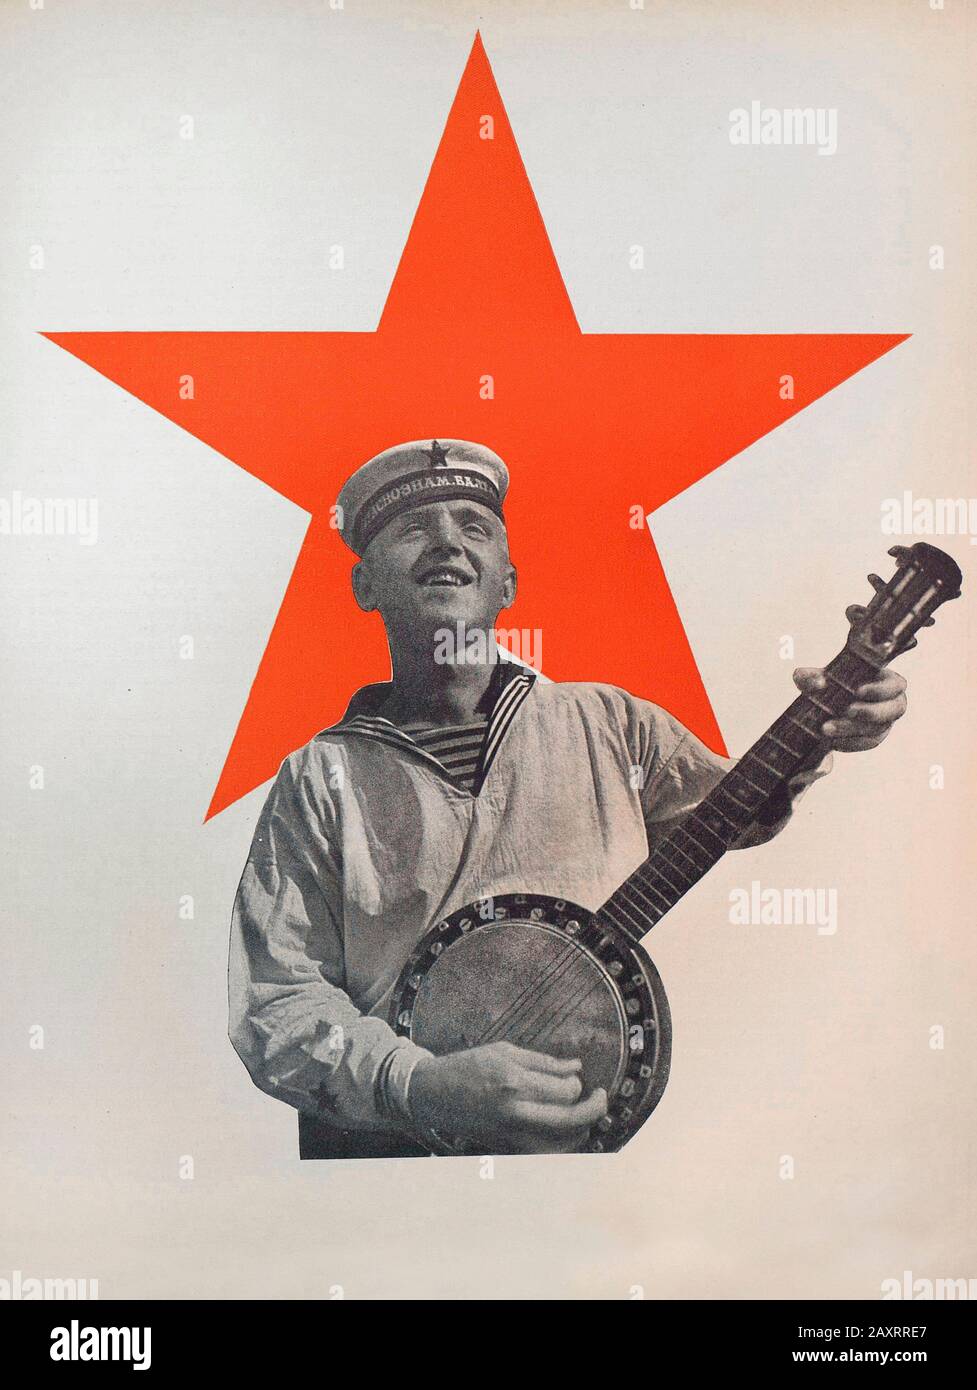 Ejército Rojo en 1930. Del libro de propaganda soviético de 1937. Soldado de la marina soviética en el bachground de la estrella roja. Foto de stock